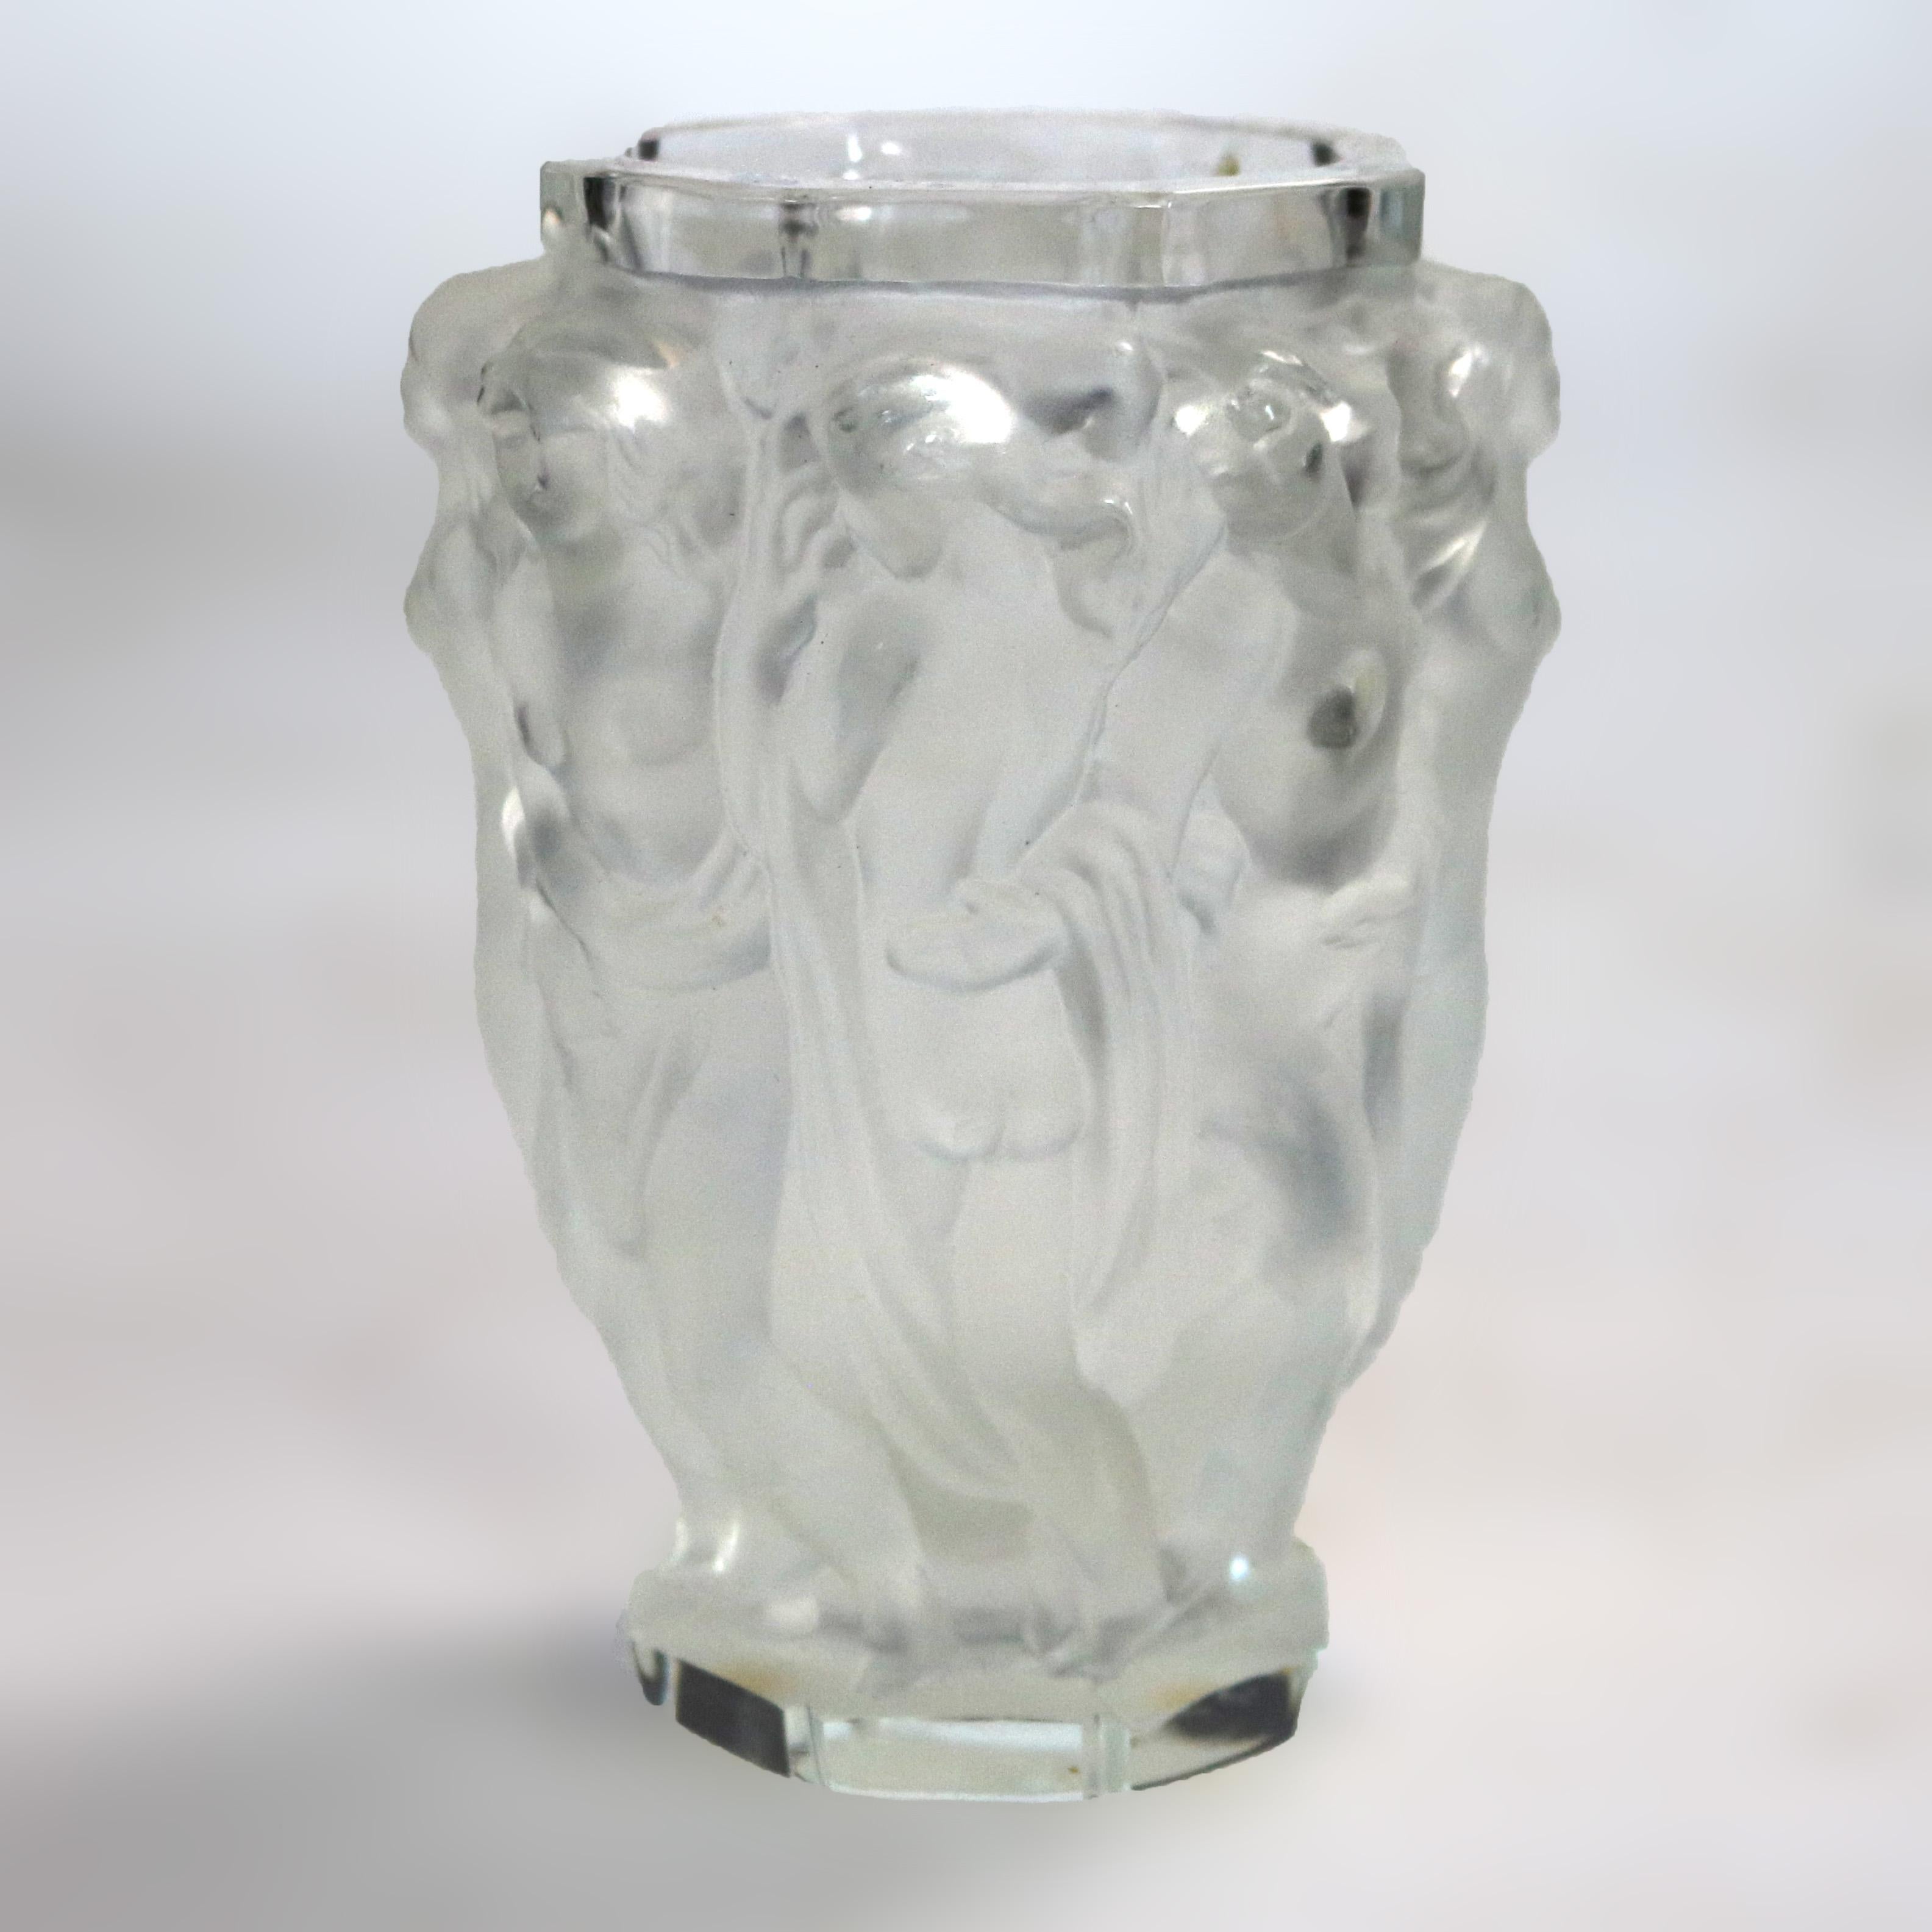 Un vase Art déco français de style Lalique offre une construction en verre d'art avec des femmes en relief, signé FH comme photographié, circa 1920.

Mesures - 5,75 